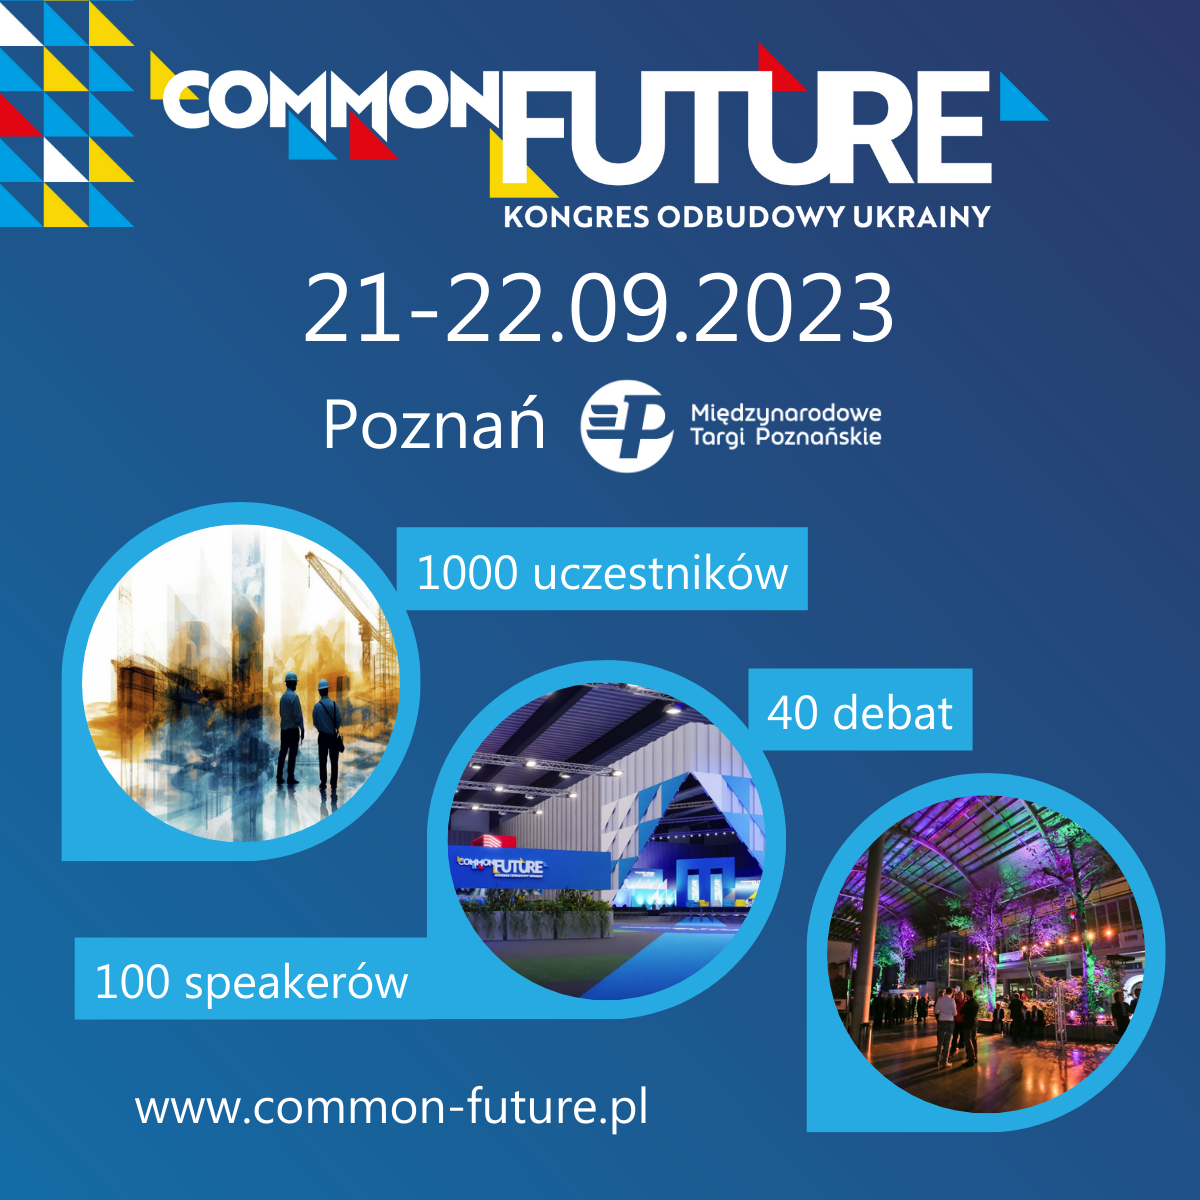 Kongres Odbudowy Ukrainy COMMON FUTURE Poznań, 21-22.09.2023